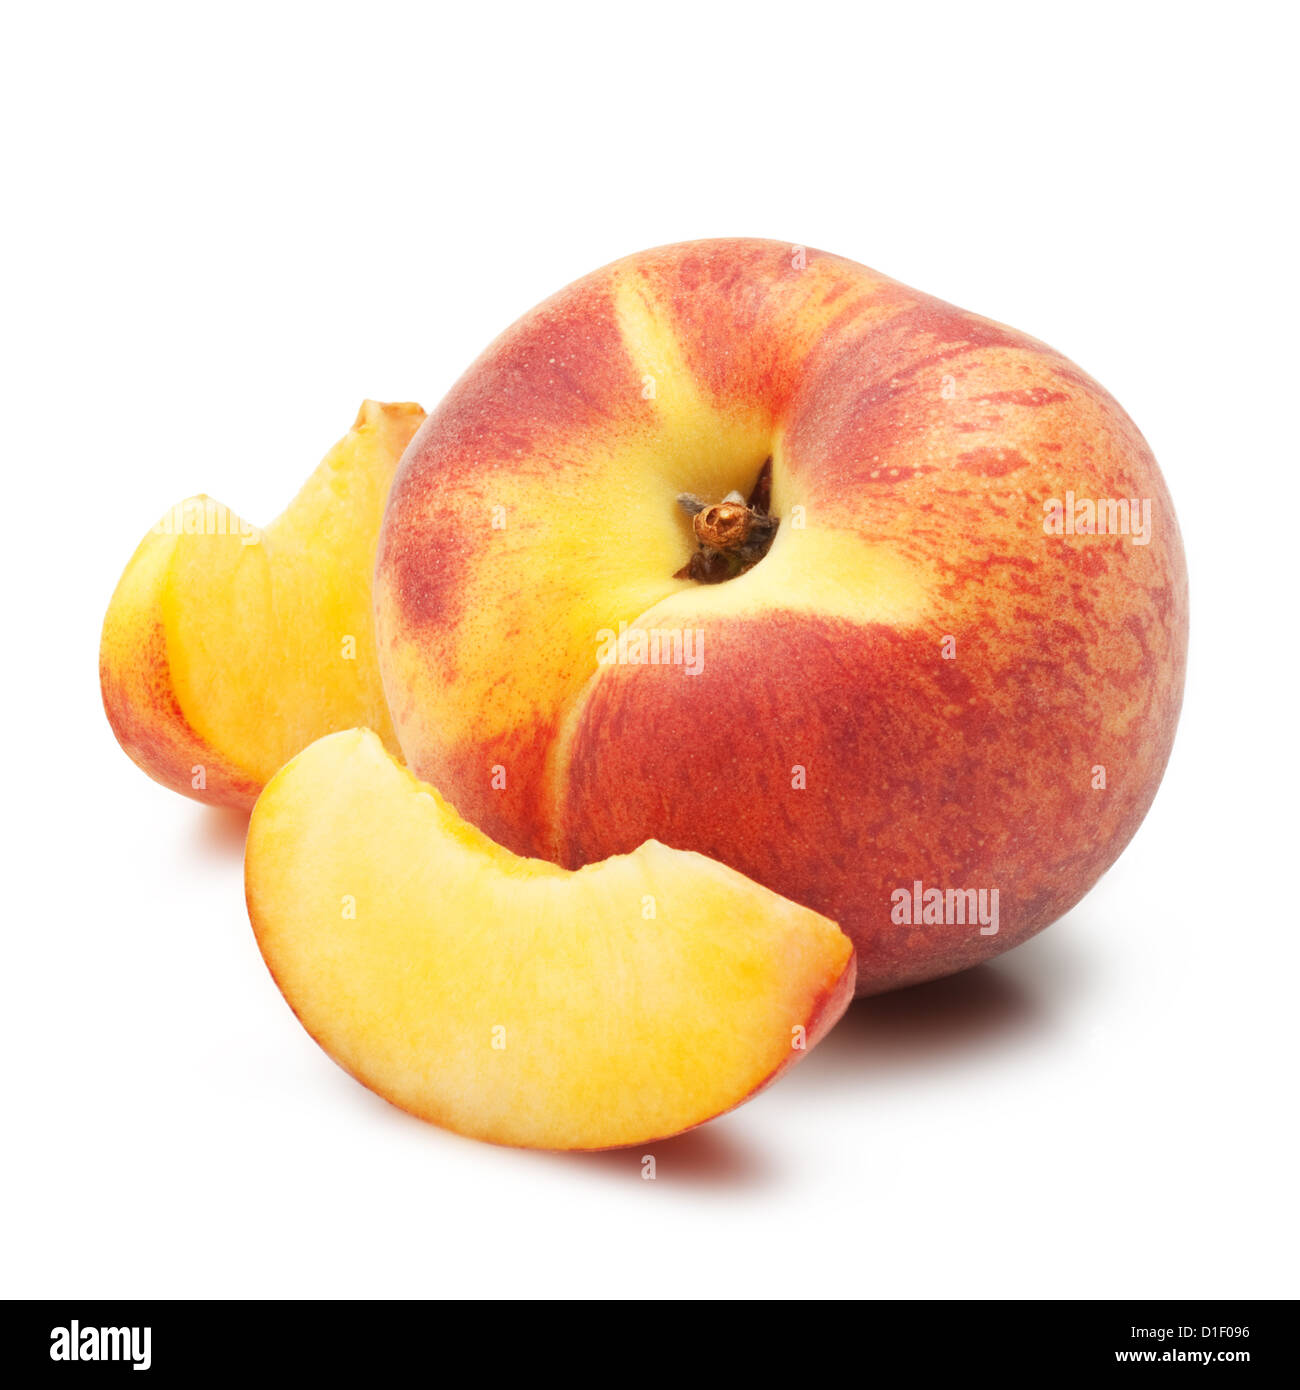 Ripe peach fruit slises on white background Stock Photo